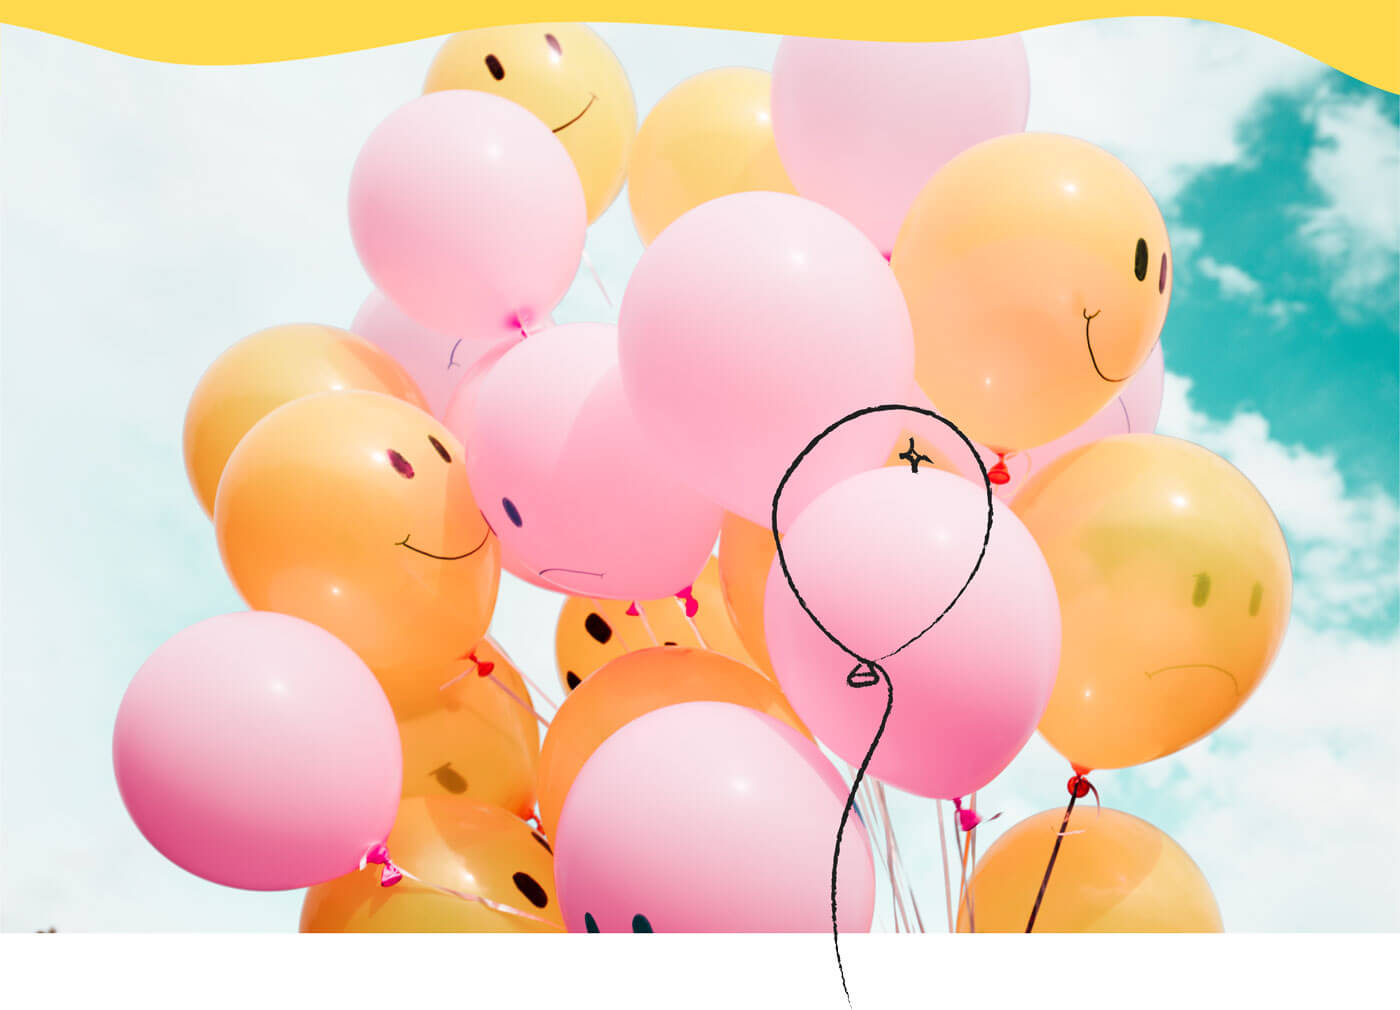 Plusieurs ballons gonflés à l'hélium avec des visage sourients dessinés